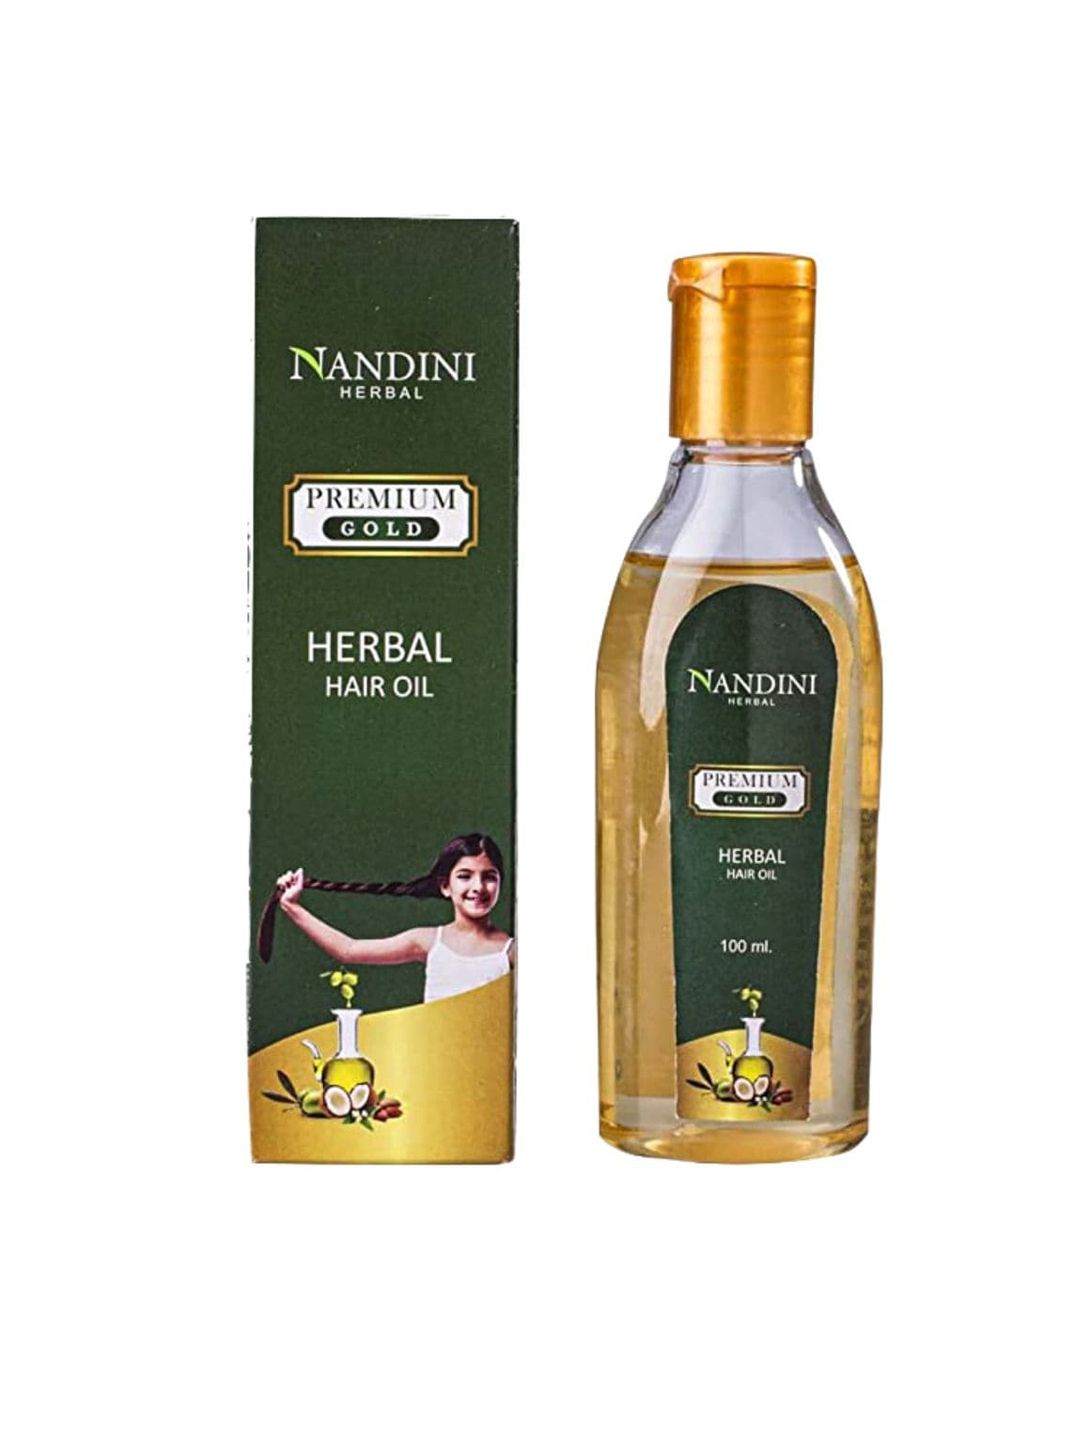 Nandini Herbal Premium Gold Hair Oil - 100ml Price in India